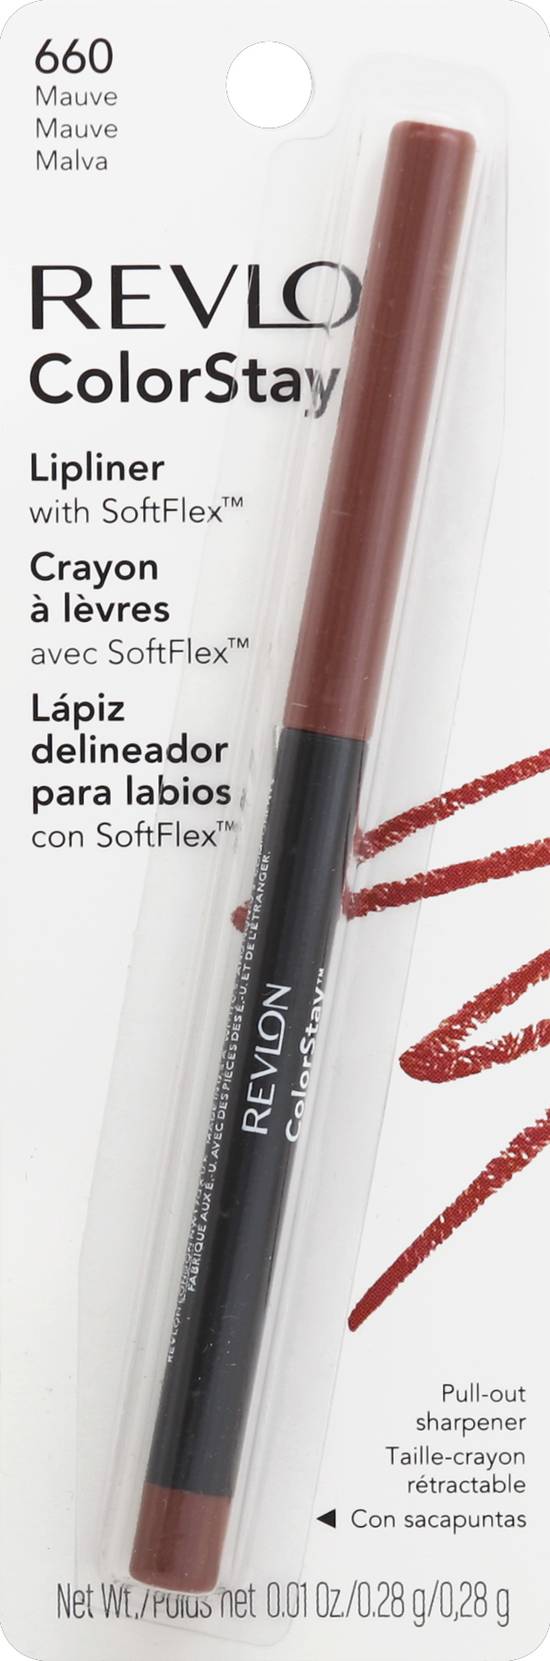 Revlon Colorstay 660 Mauve Lip Liner